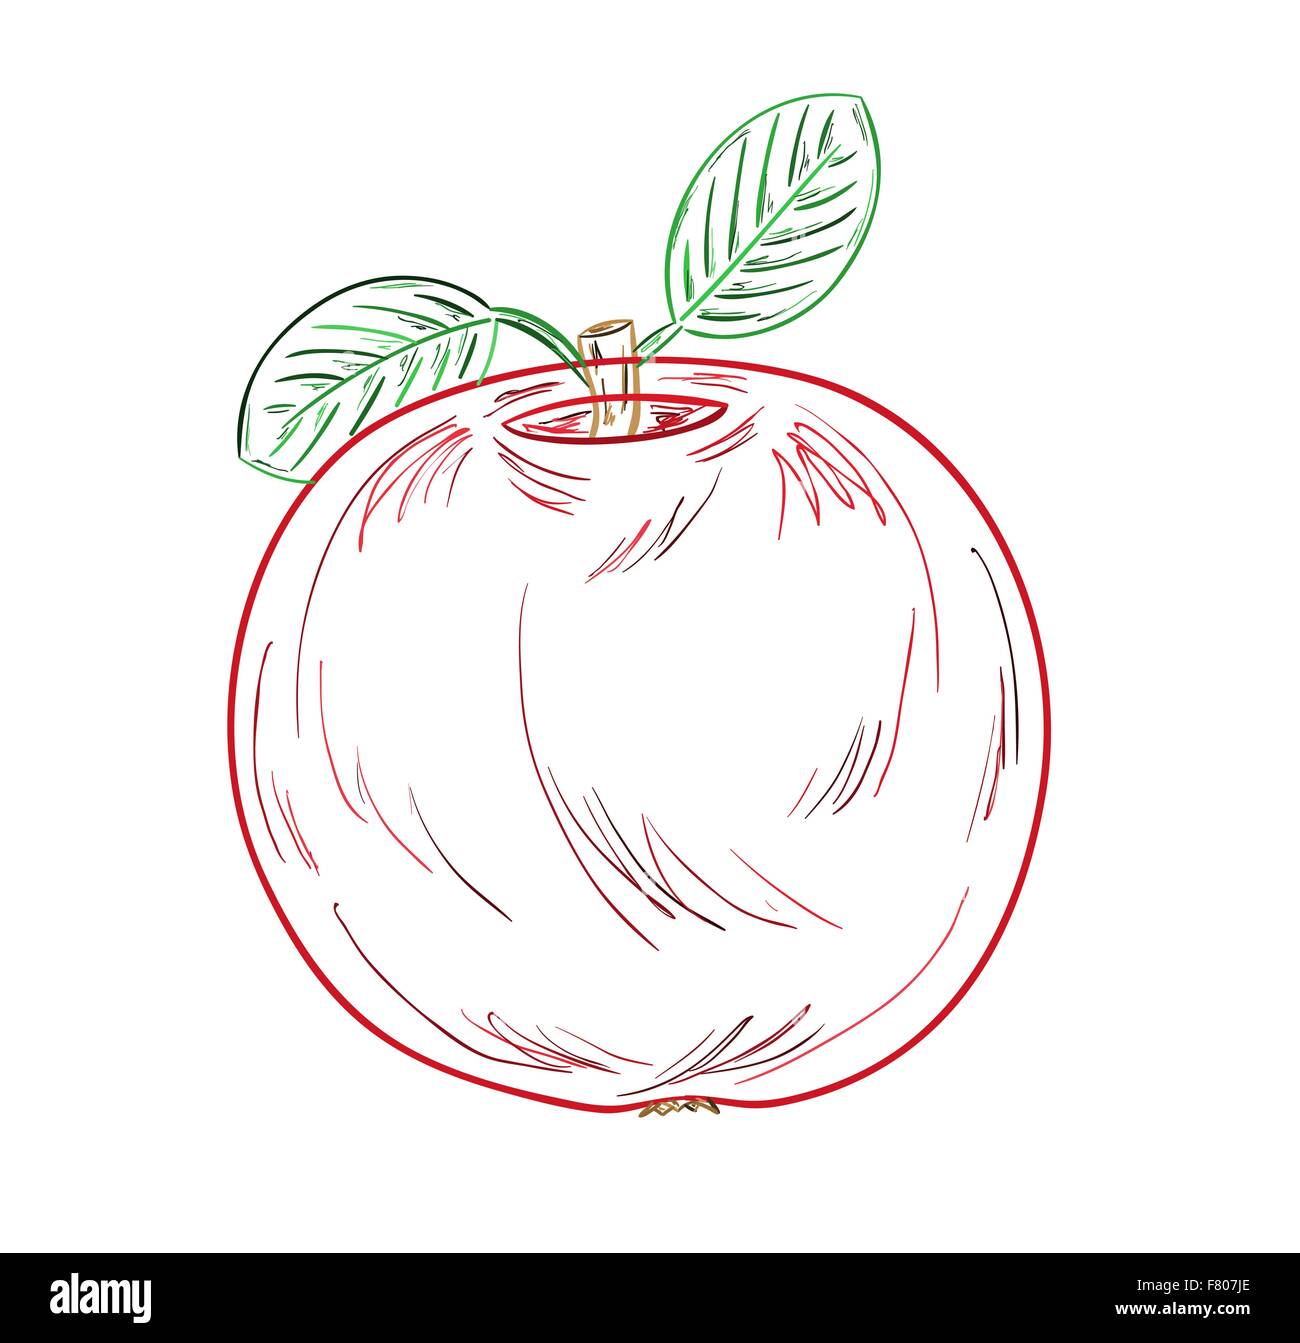 apple sketch Stock Vector